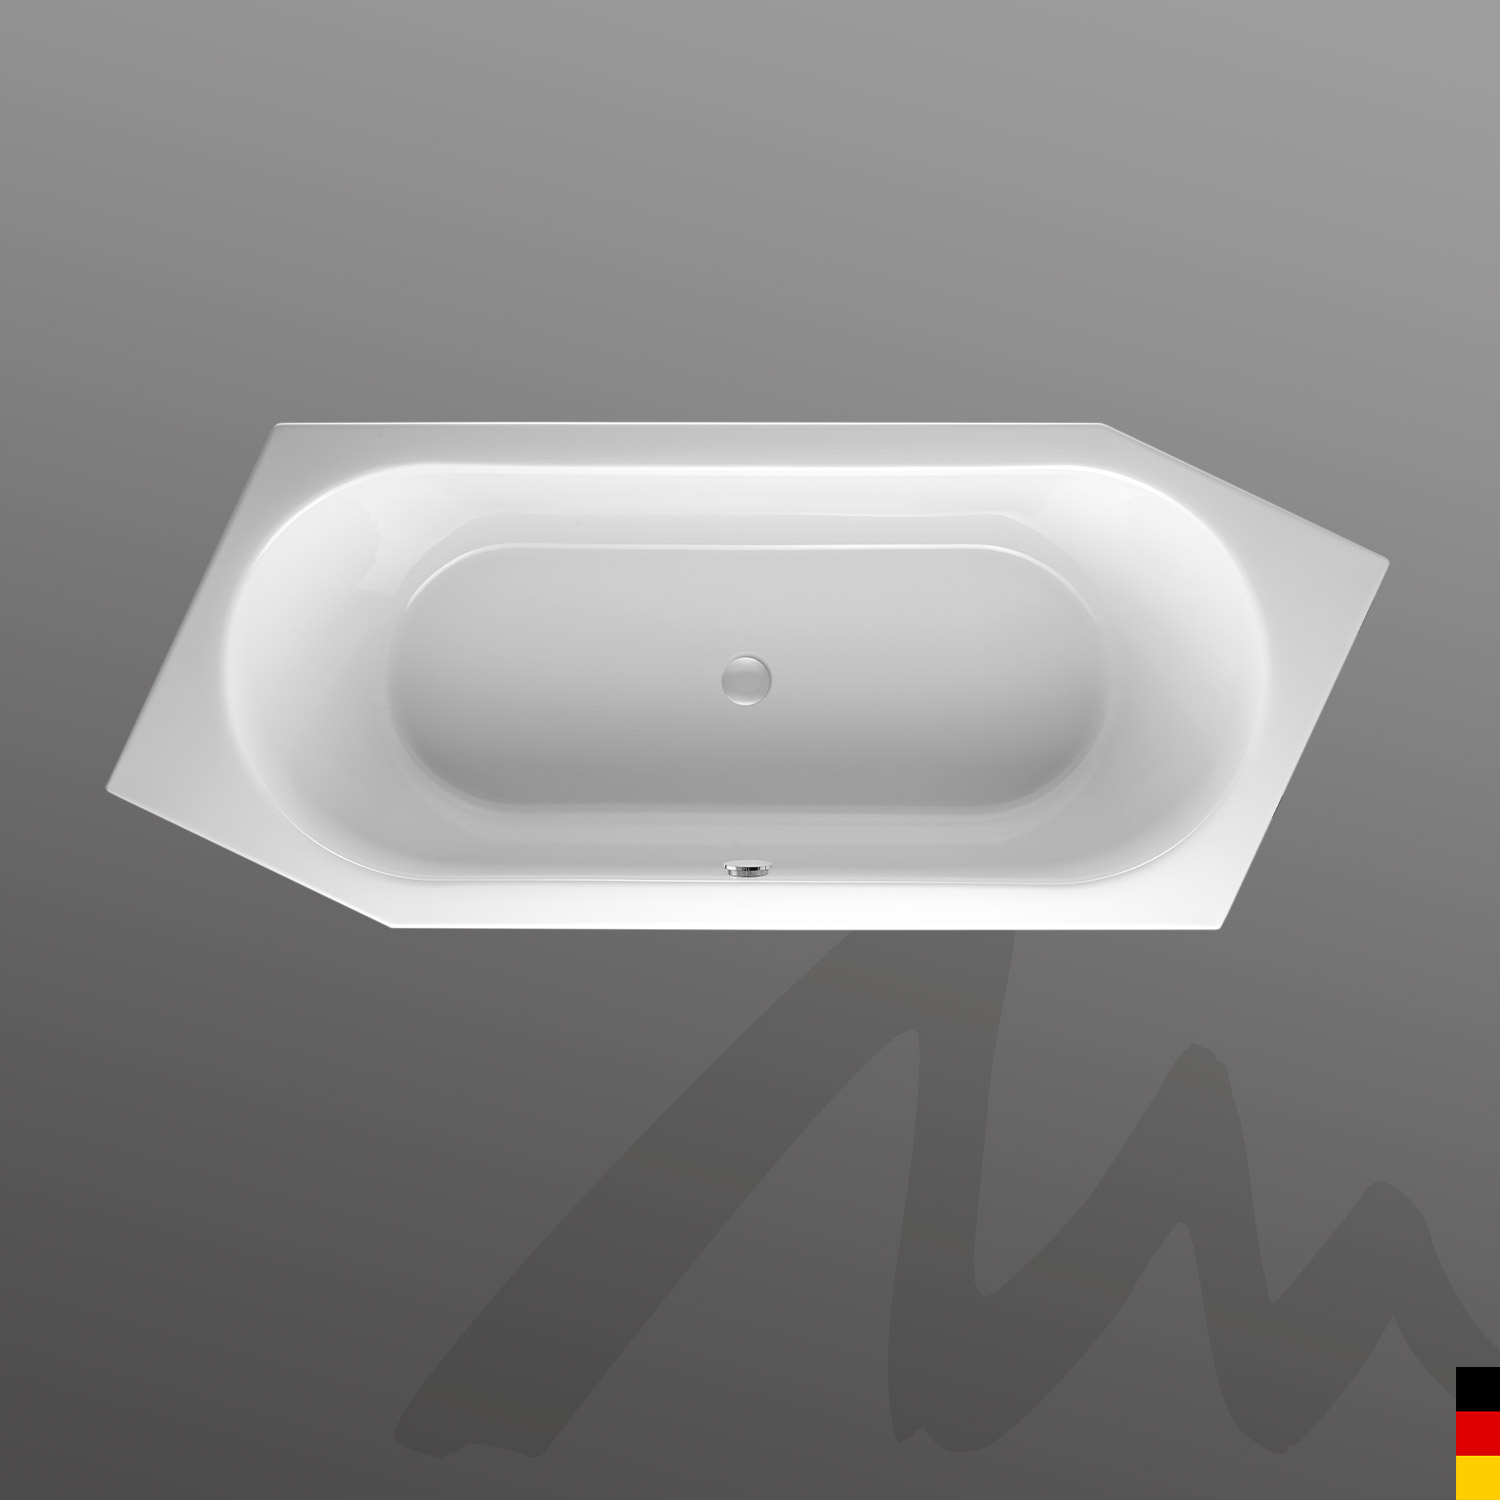 Mauersberger Badewanne 6-Eck Ovata asym 205/80 Ausführung rechts  205x80x45cm  Farbe:rein-weiß